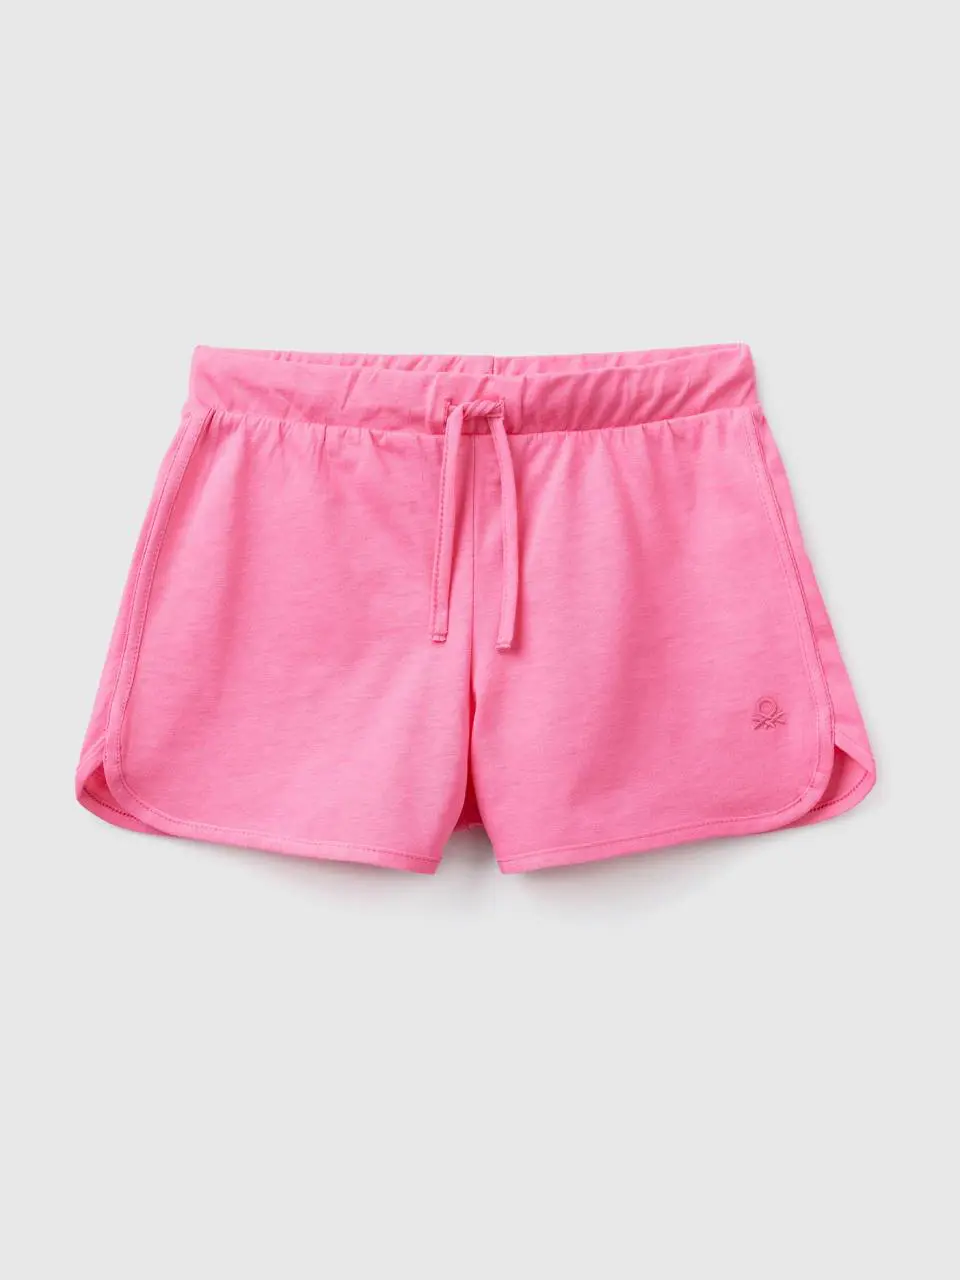 Benetton runner style shorts in organic cotton. 1